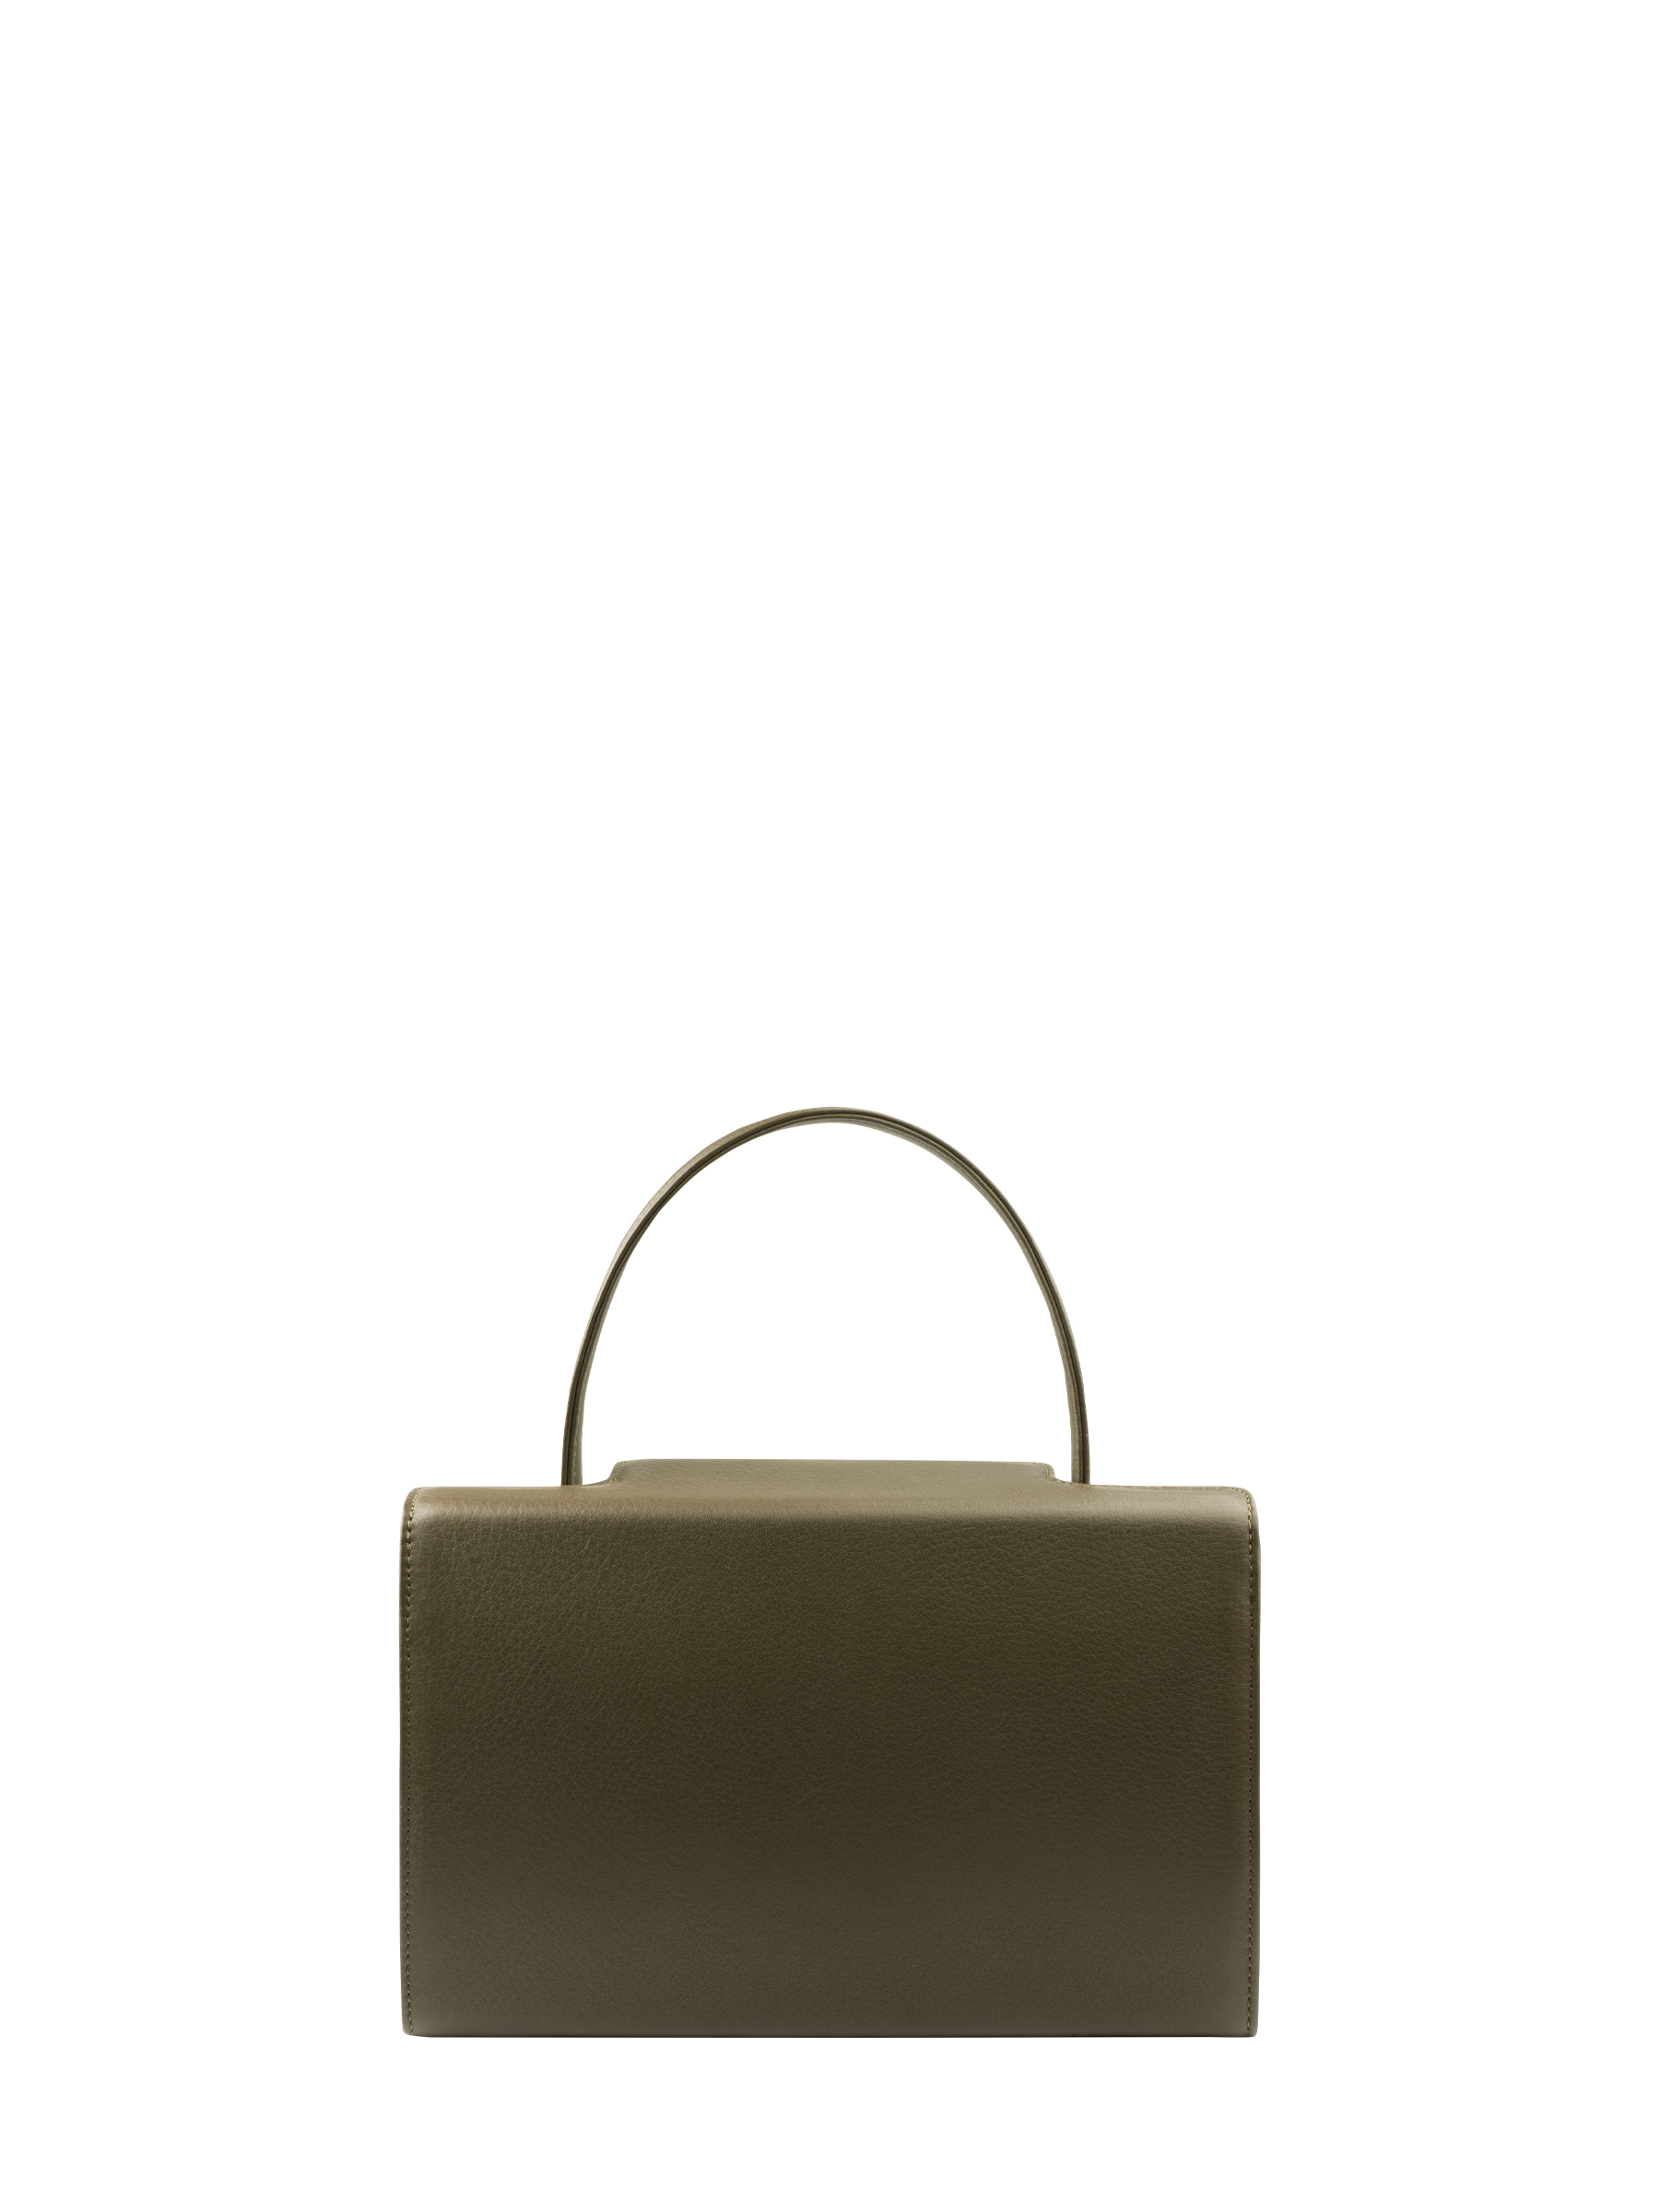 931 hand bag in khaki green calfskin leather | TSATSAS